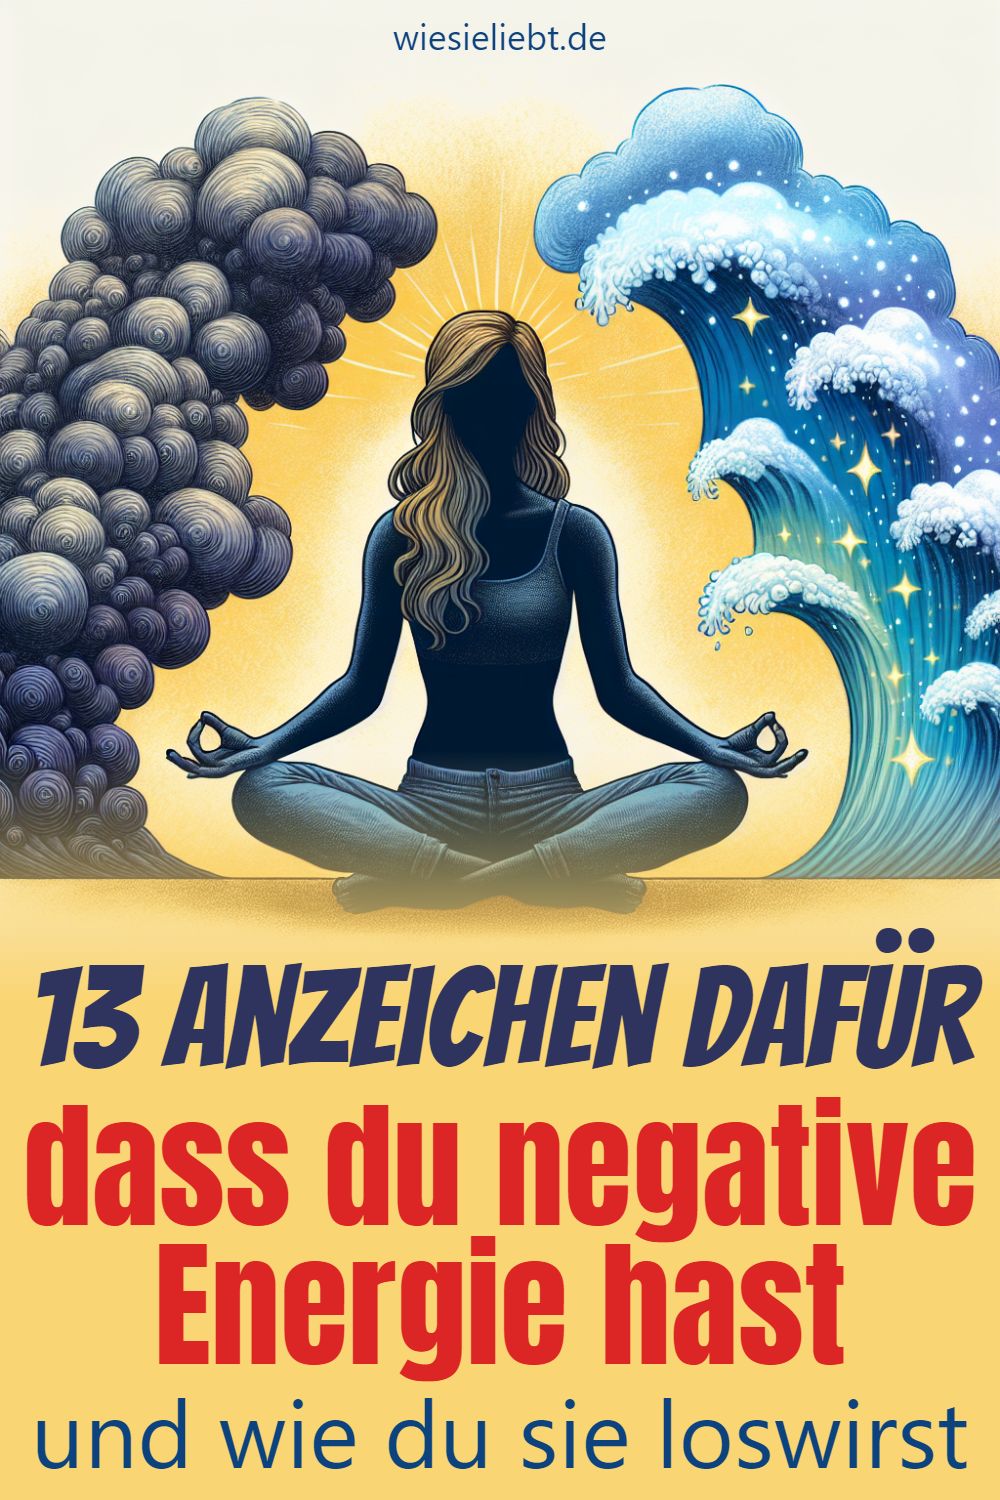 13 Anzeichen dafür dass du negative Energie hast und wie du sie loswirst